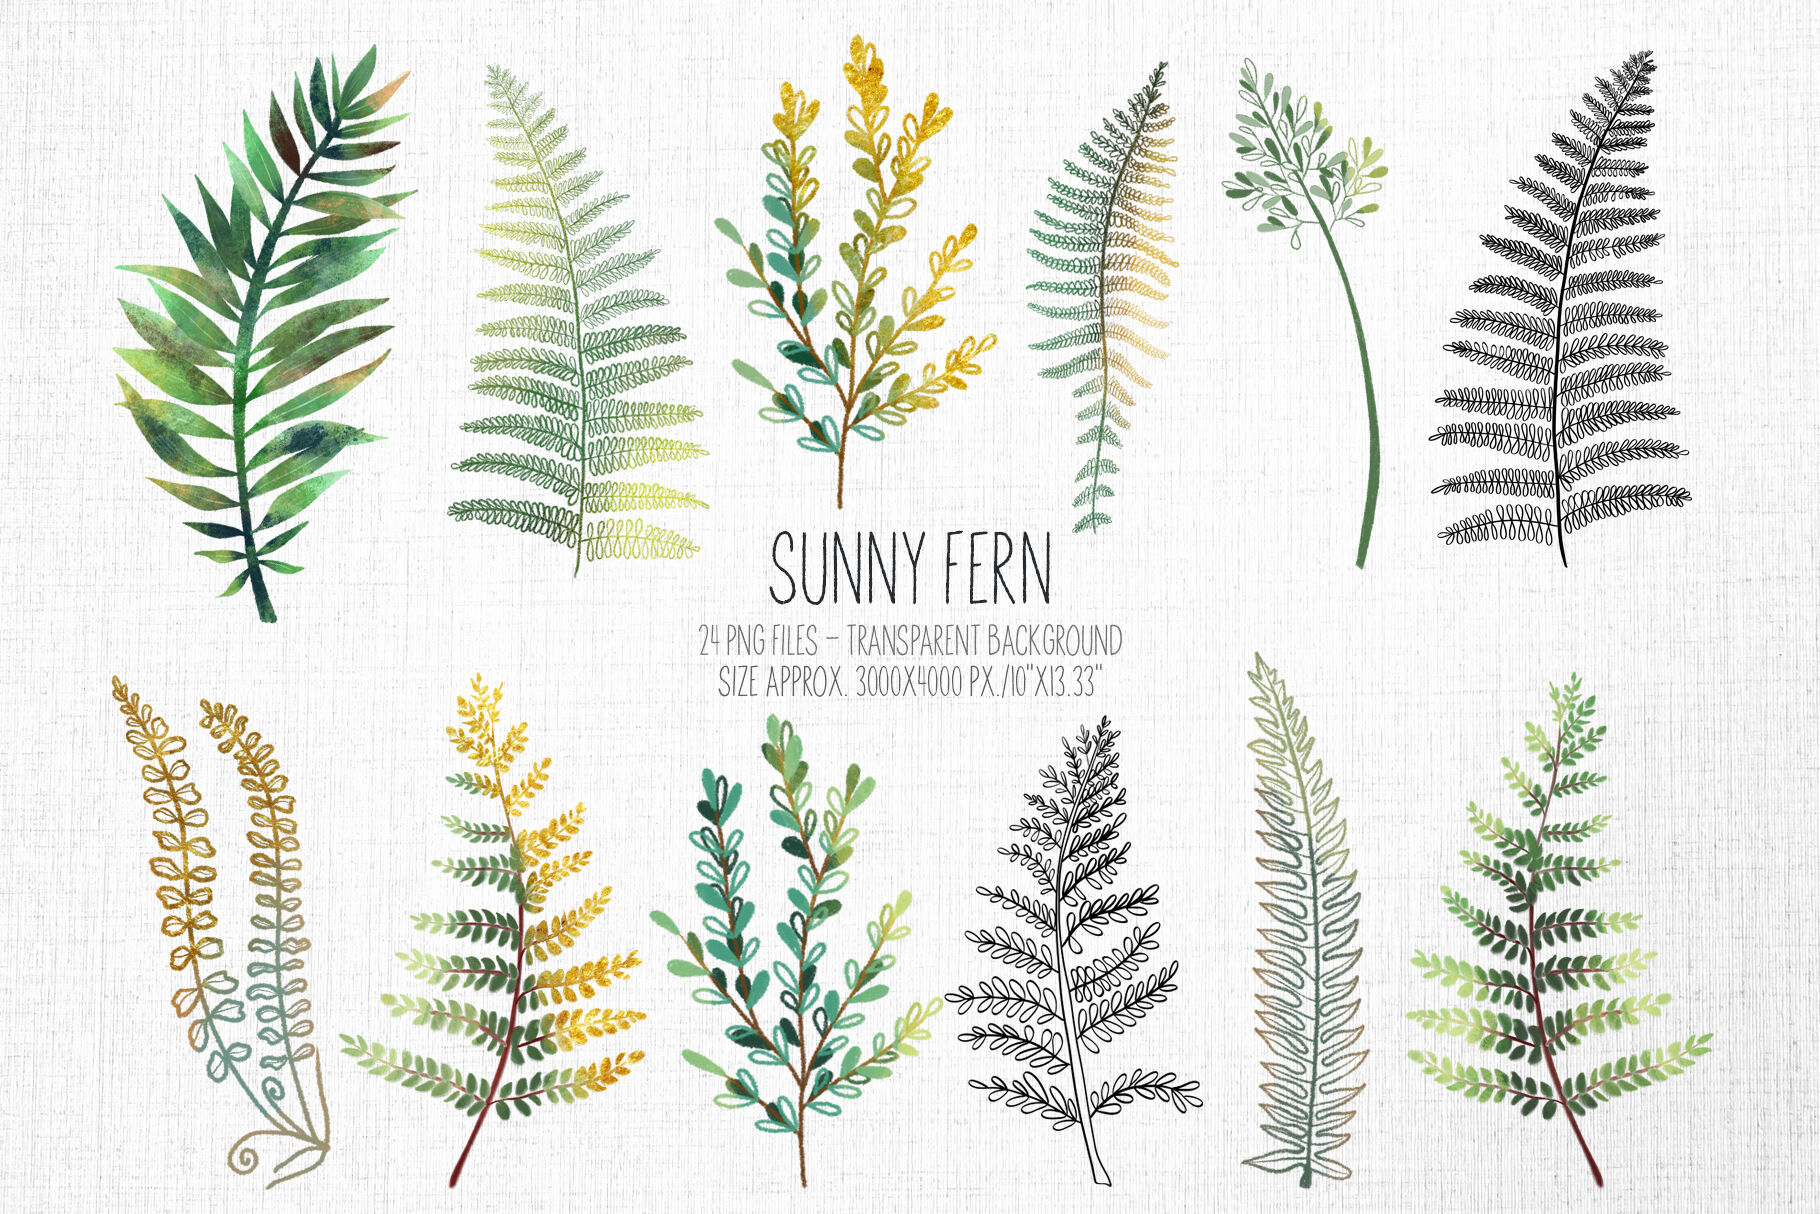 水彩手绘盛夏热带森林蕨菜树叶剪贴画素材 Sunny fern